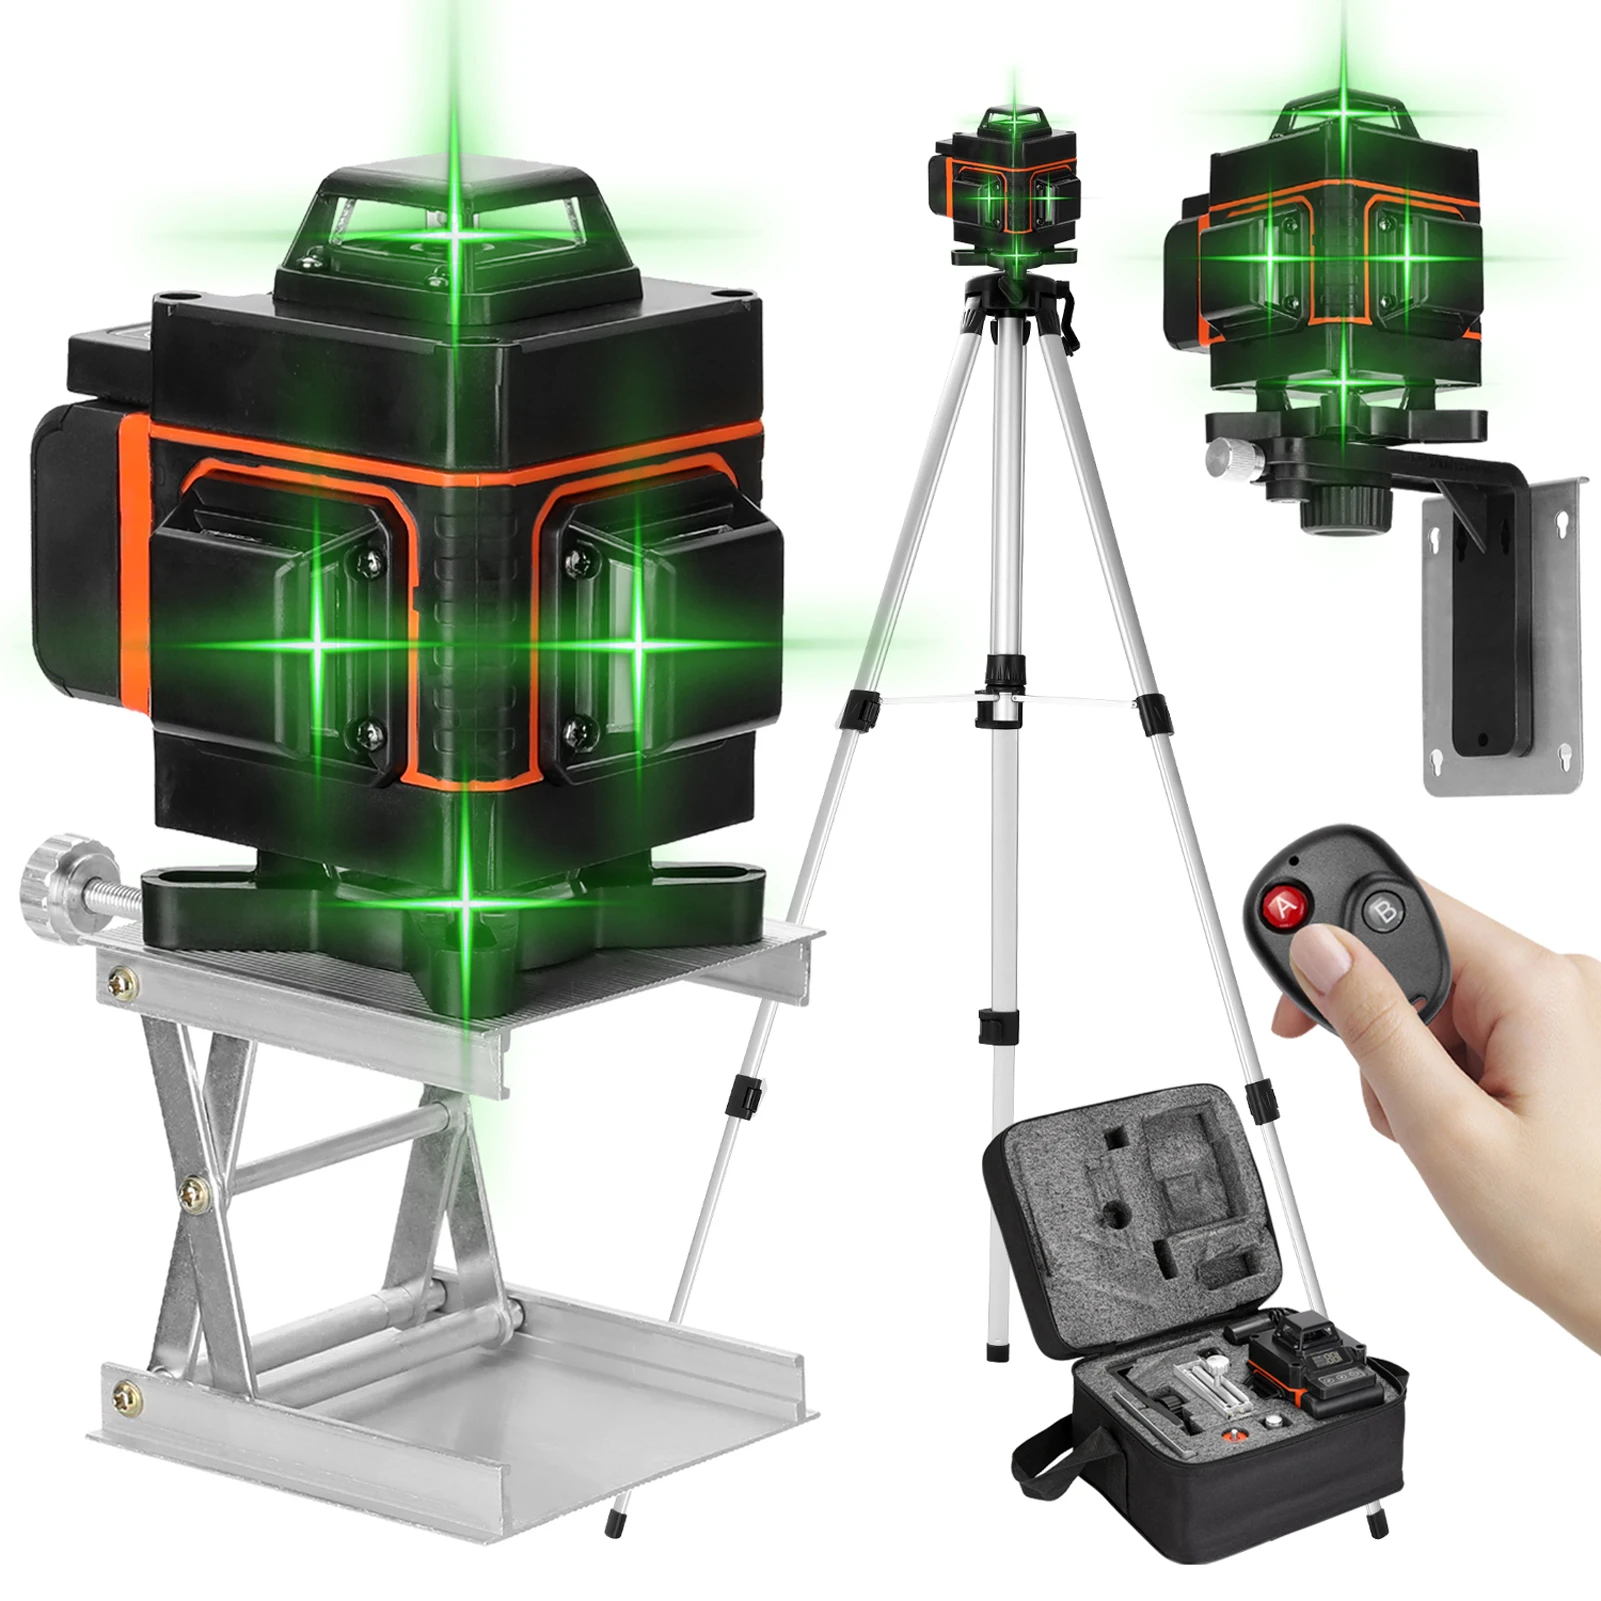 

KKmoon 16 линий лазерный н 4D само-Выравнивающий лазерный уровень 360 с регулировкой по высоте, сплав выдвижная стойка штатив-Трипод сумка для пер...